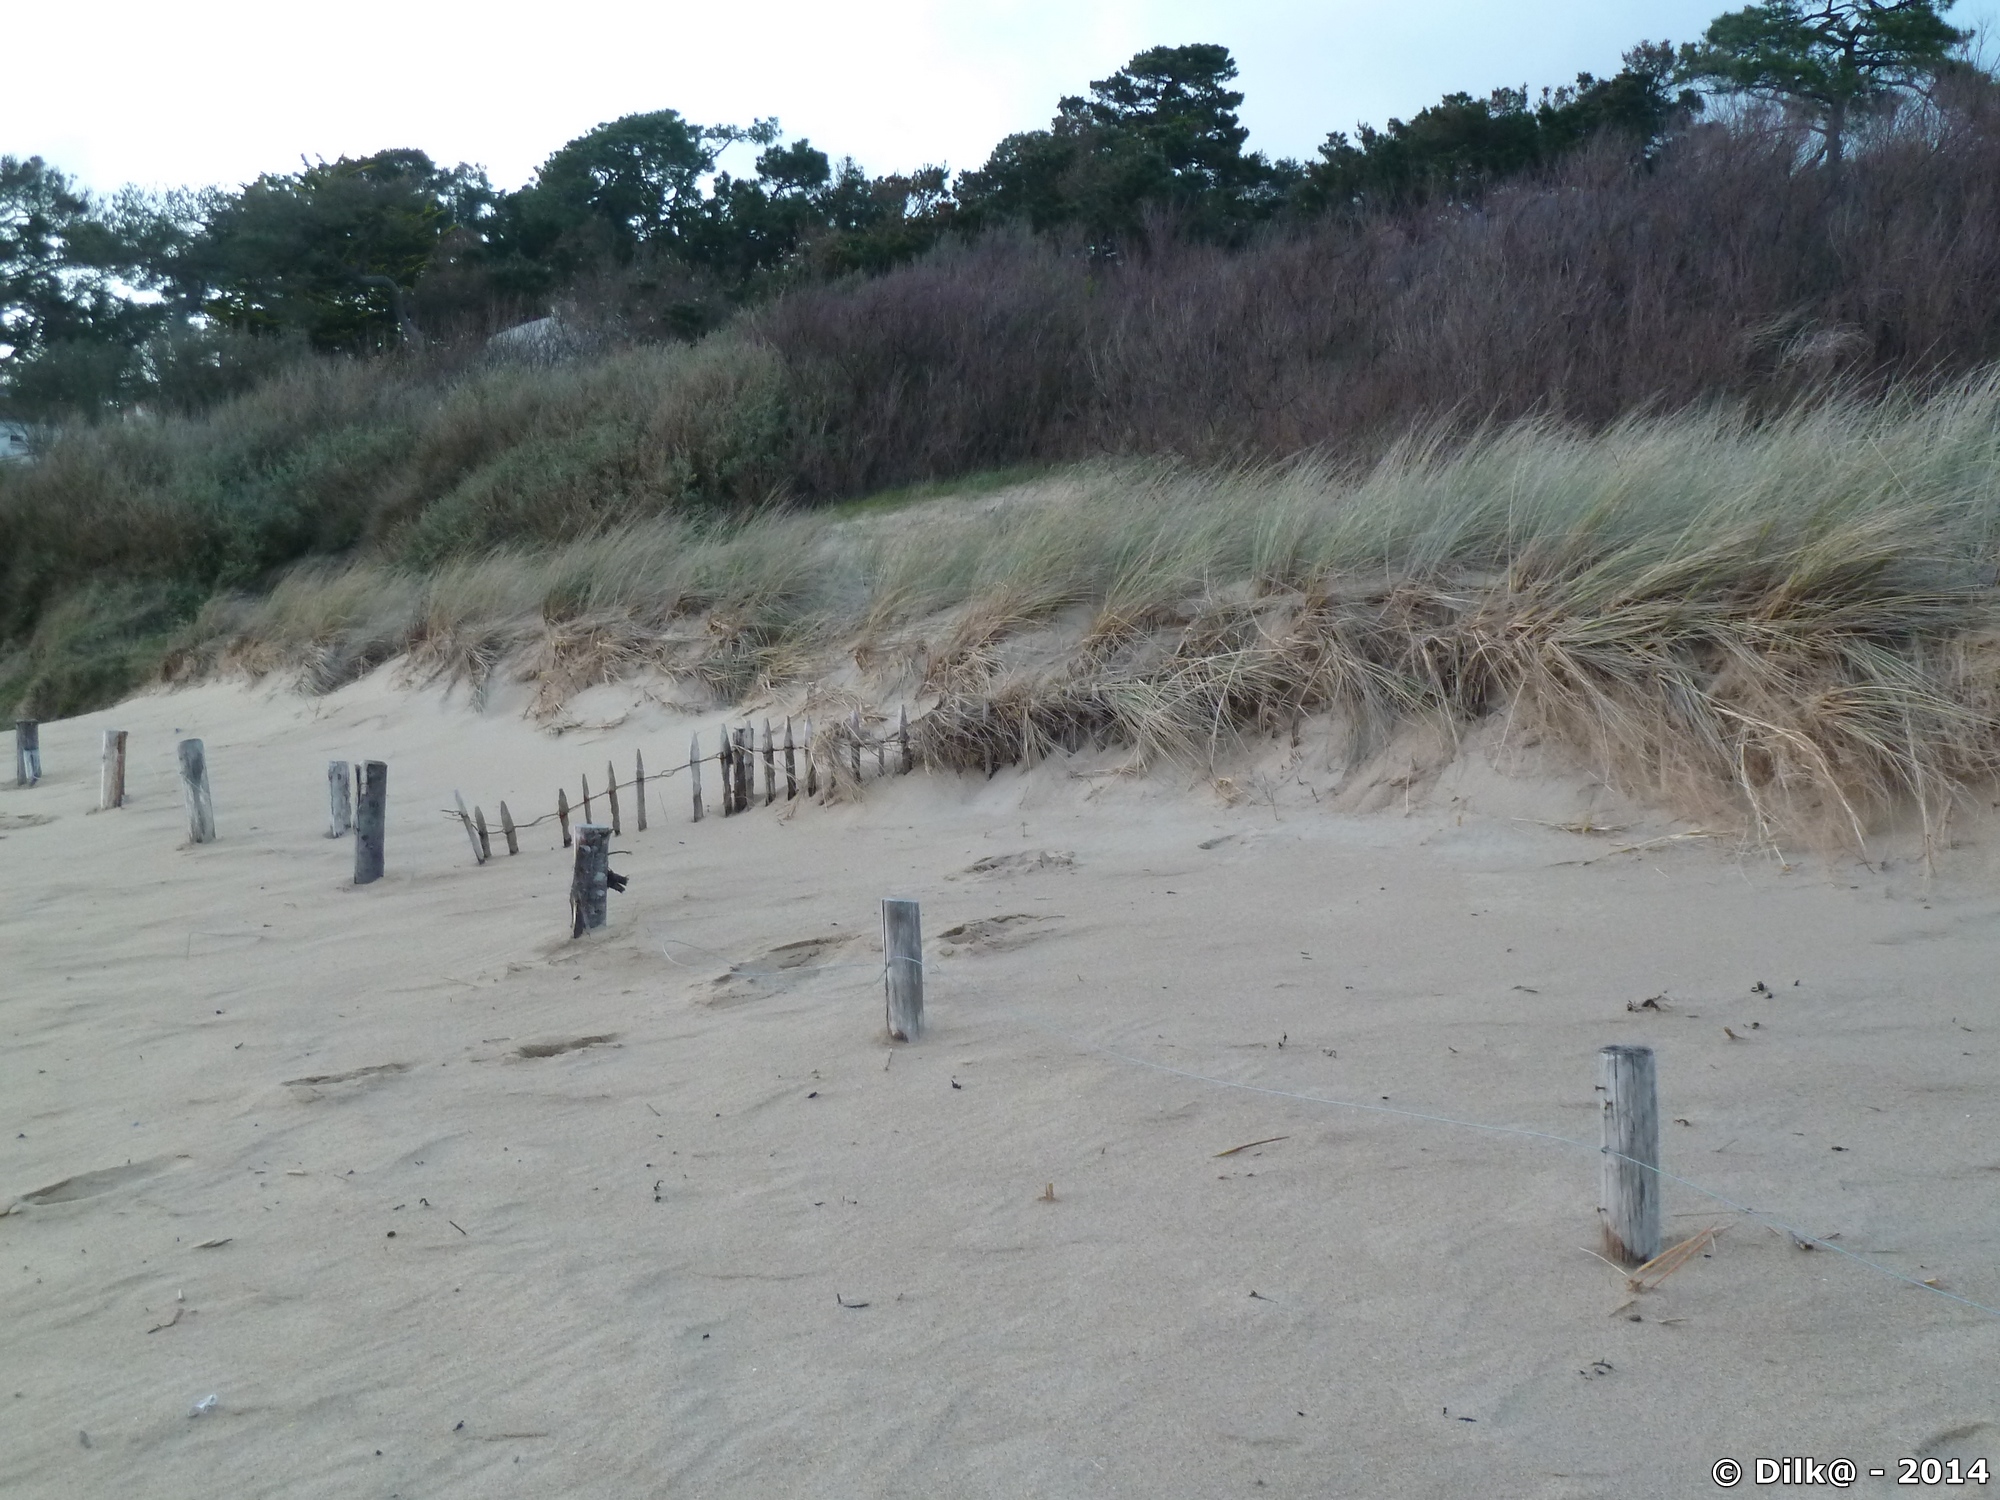 La dune et la plage se sont rejoint